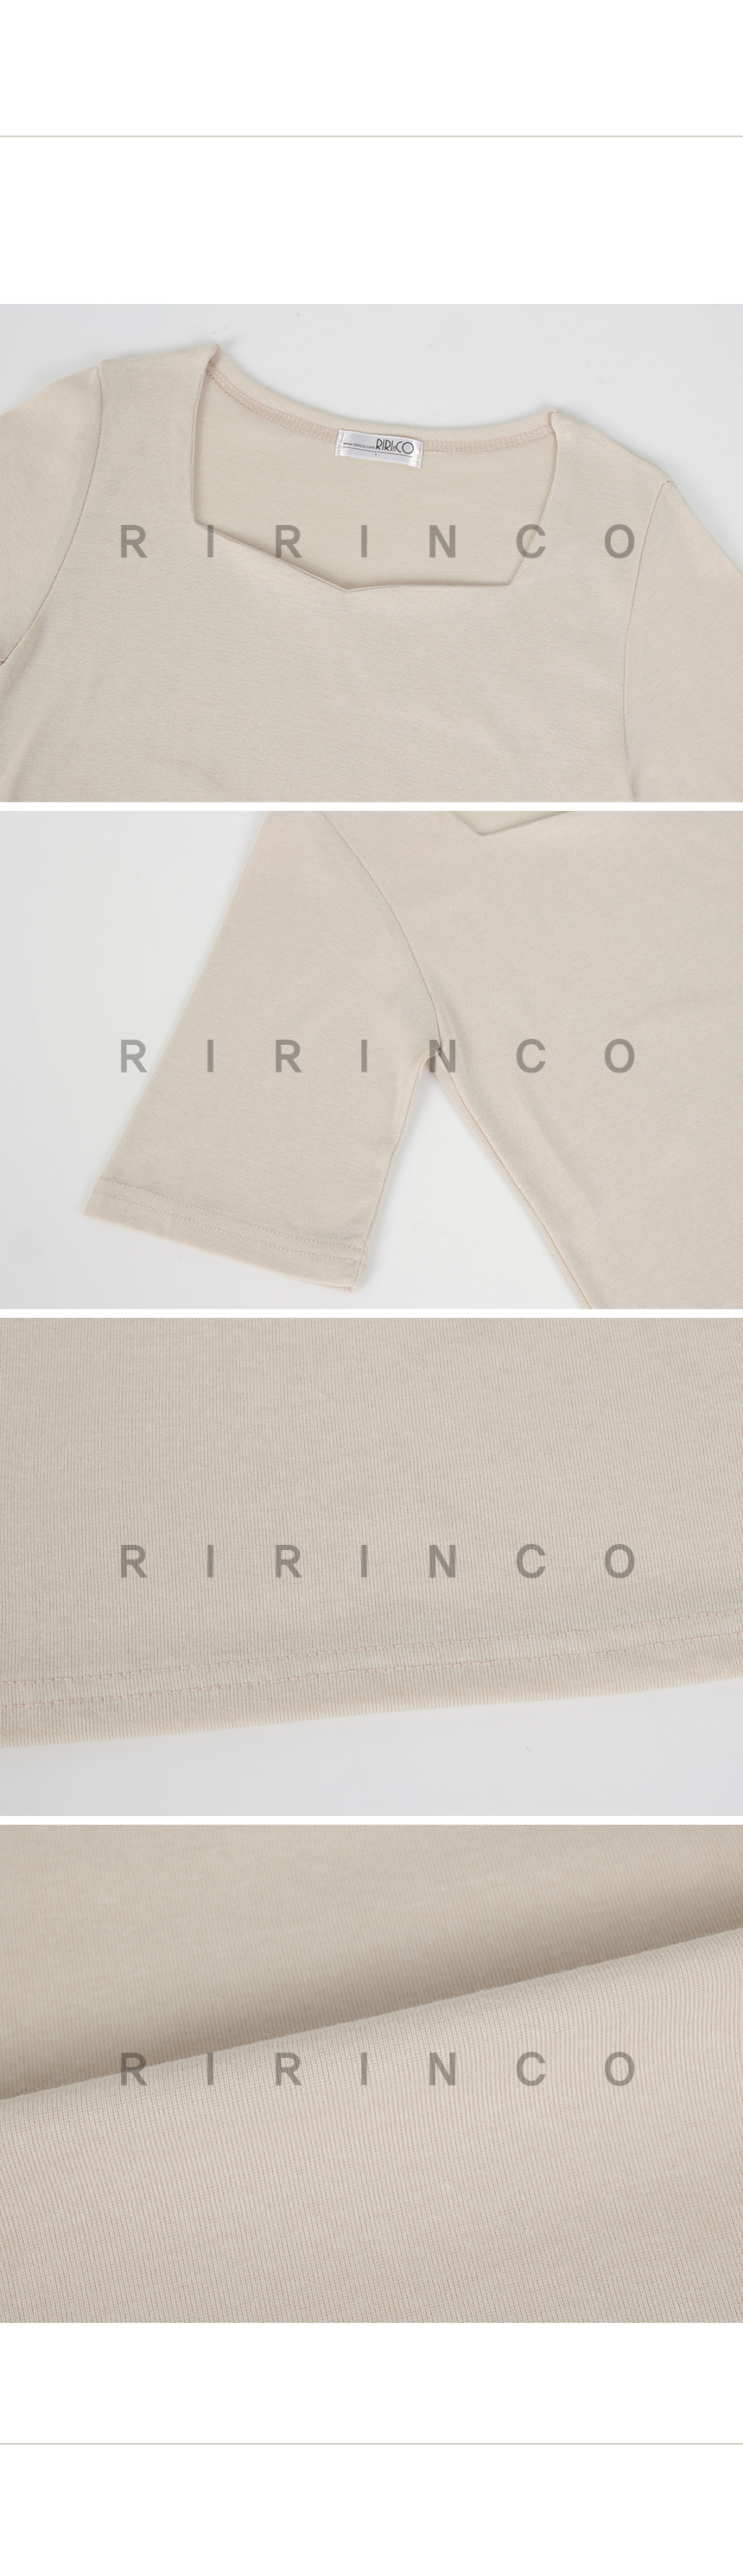 RIRINCO ハートネックスリムフィットTシャツ